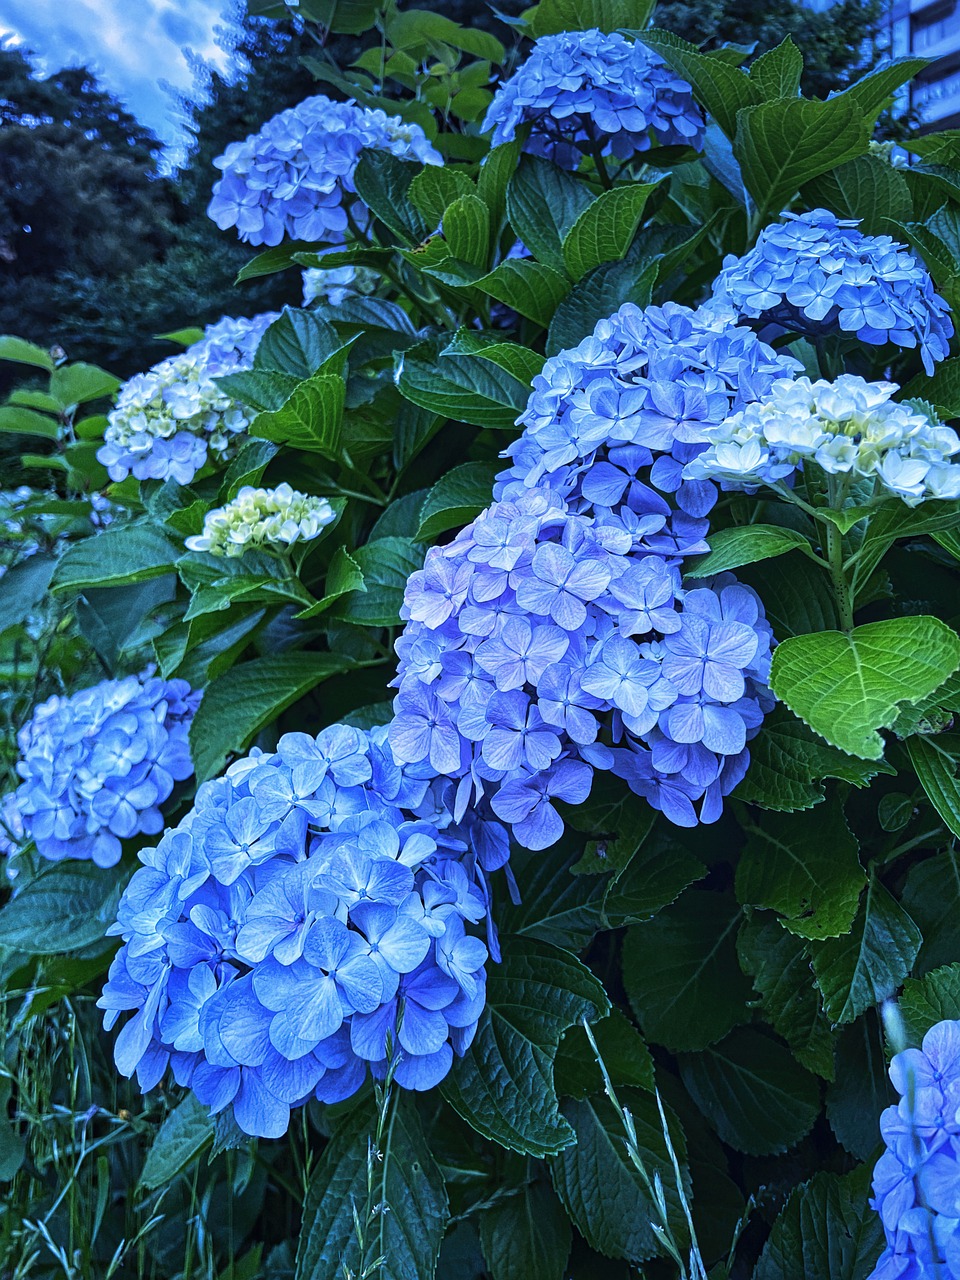 Bunga hortensia banyak bermekaran di Jepang khususnya pada bulan Juni.